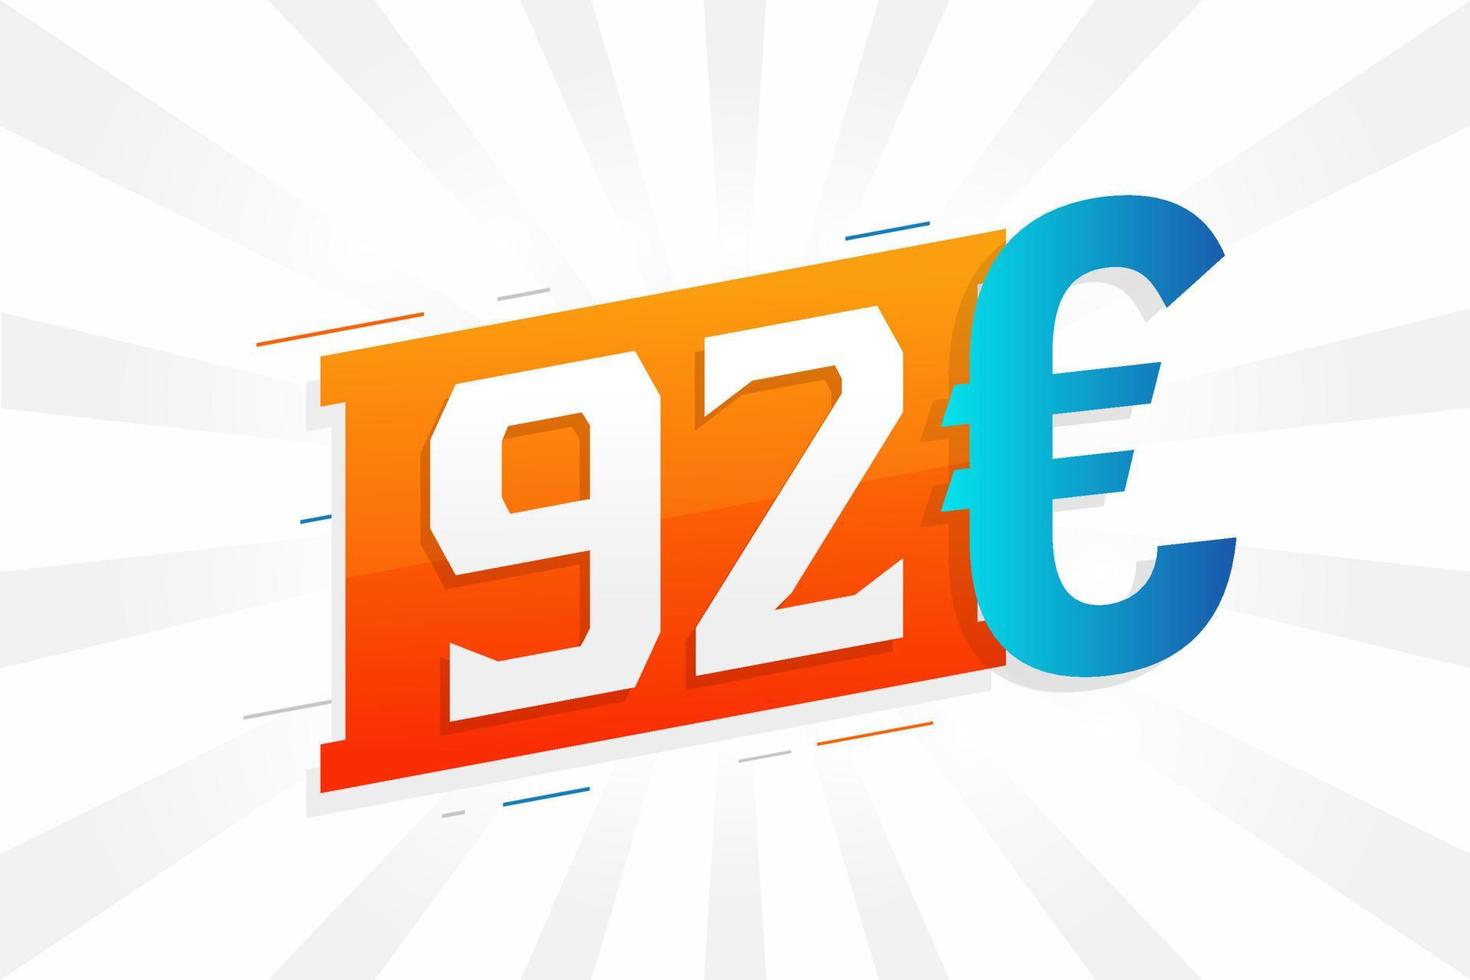 92 Euro Currency vector text symbol. 92 Euro European Union Money stock vector